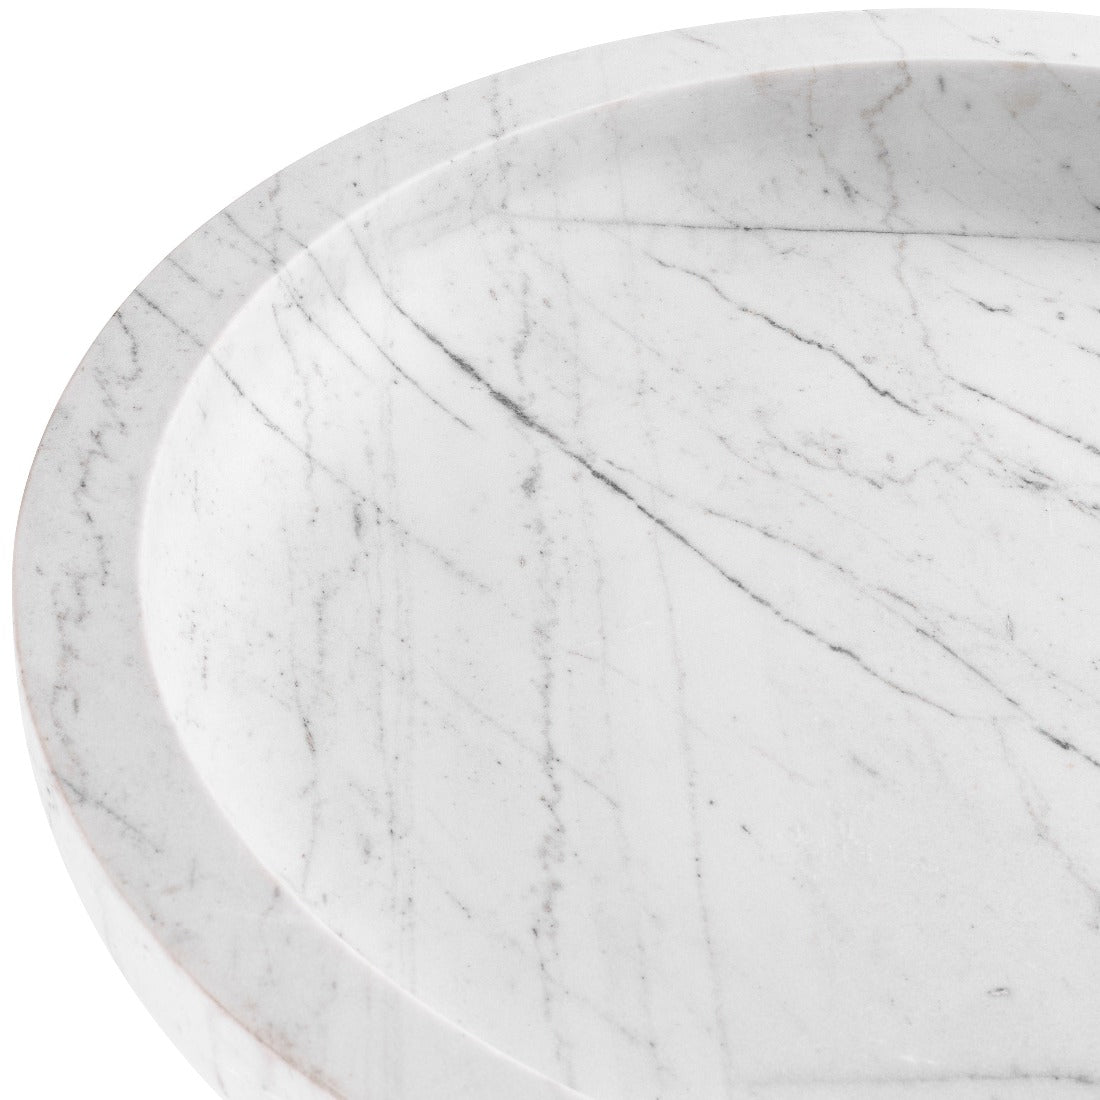 Bowl Eichholtz Renard white marble schaal